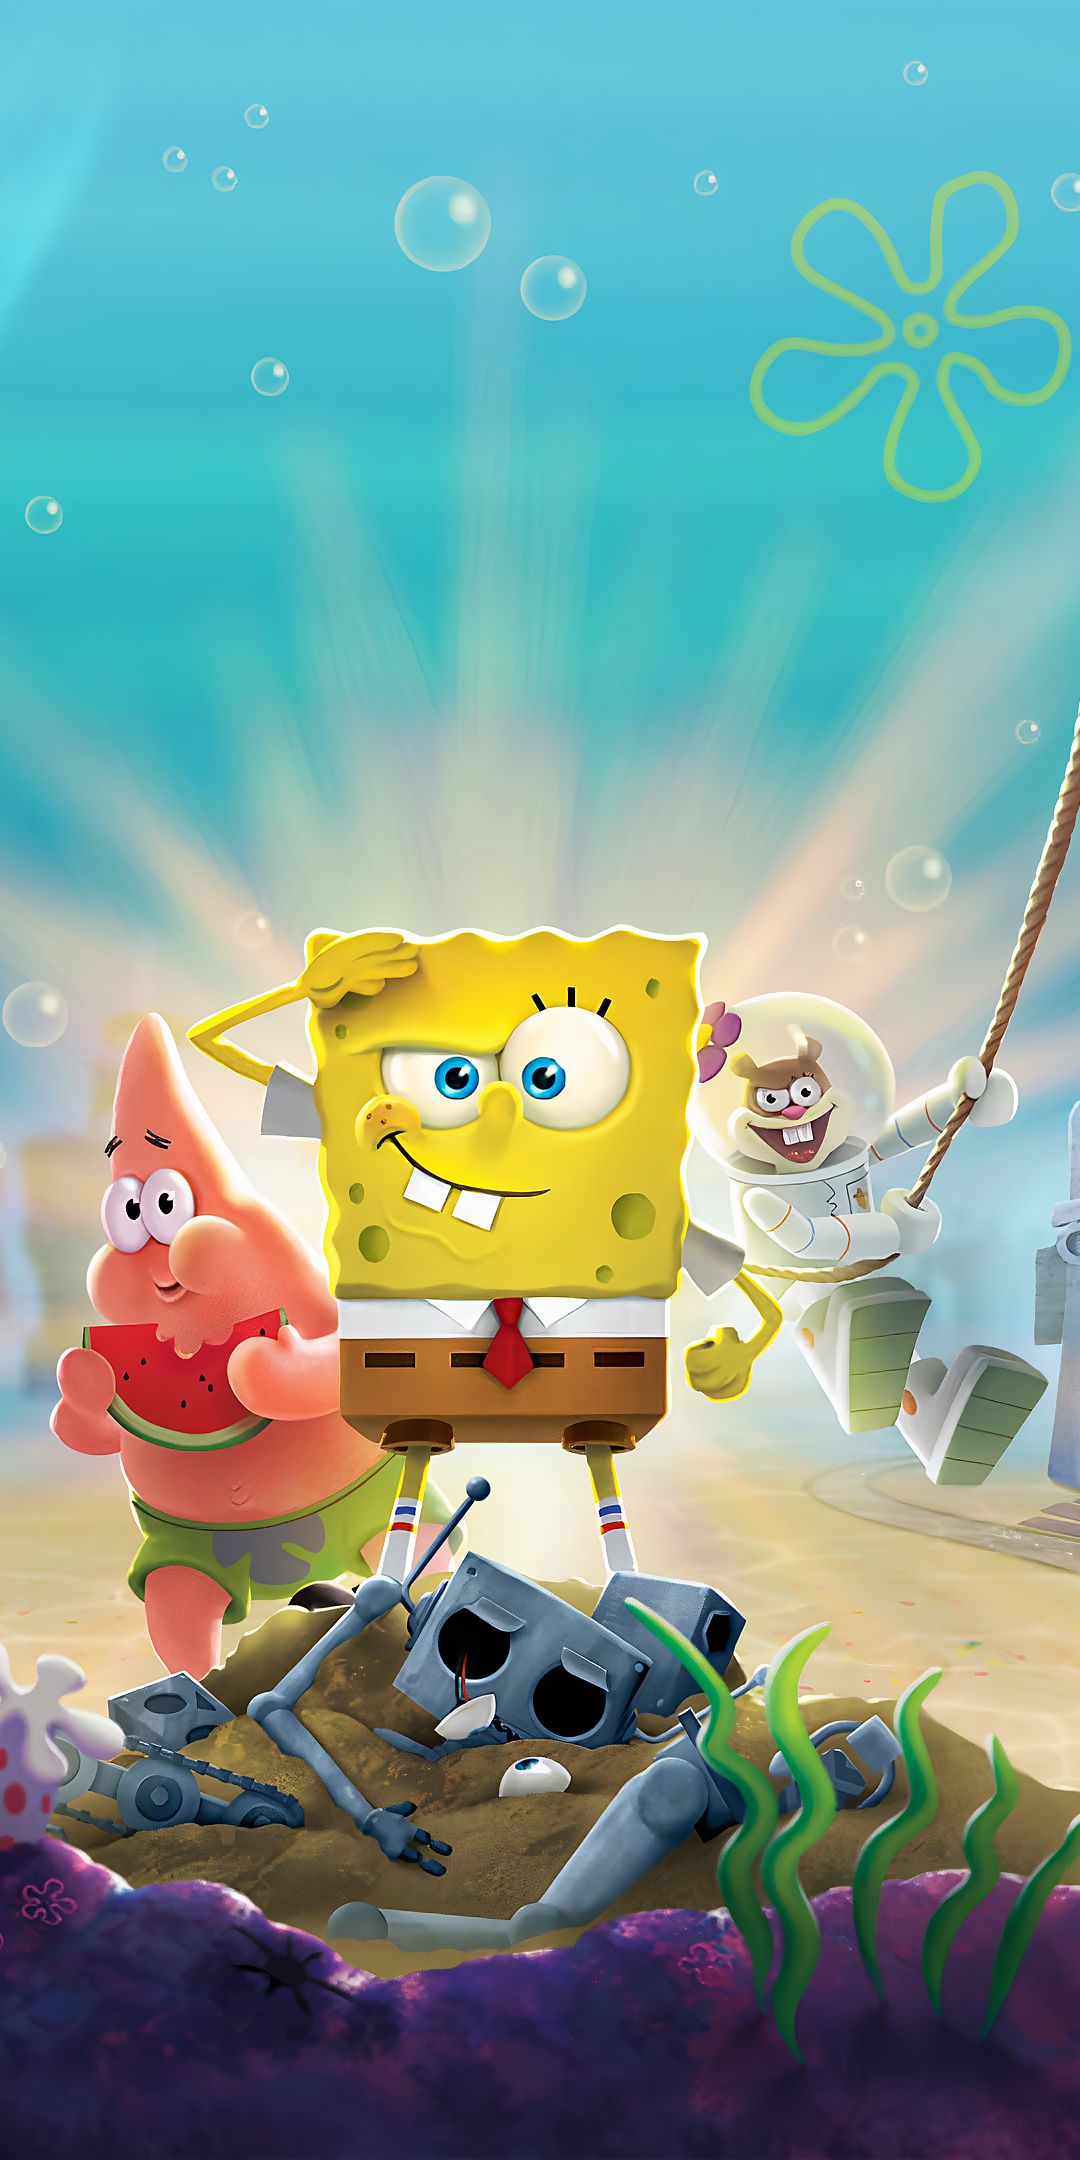 spongebob squarepants, spongebob squarepants: battle for bikini bottom, video game, patrick star